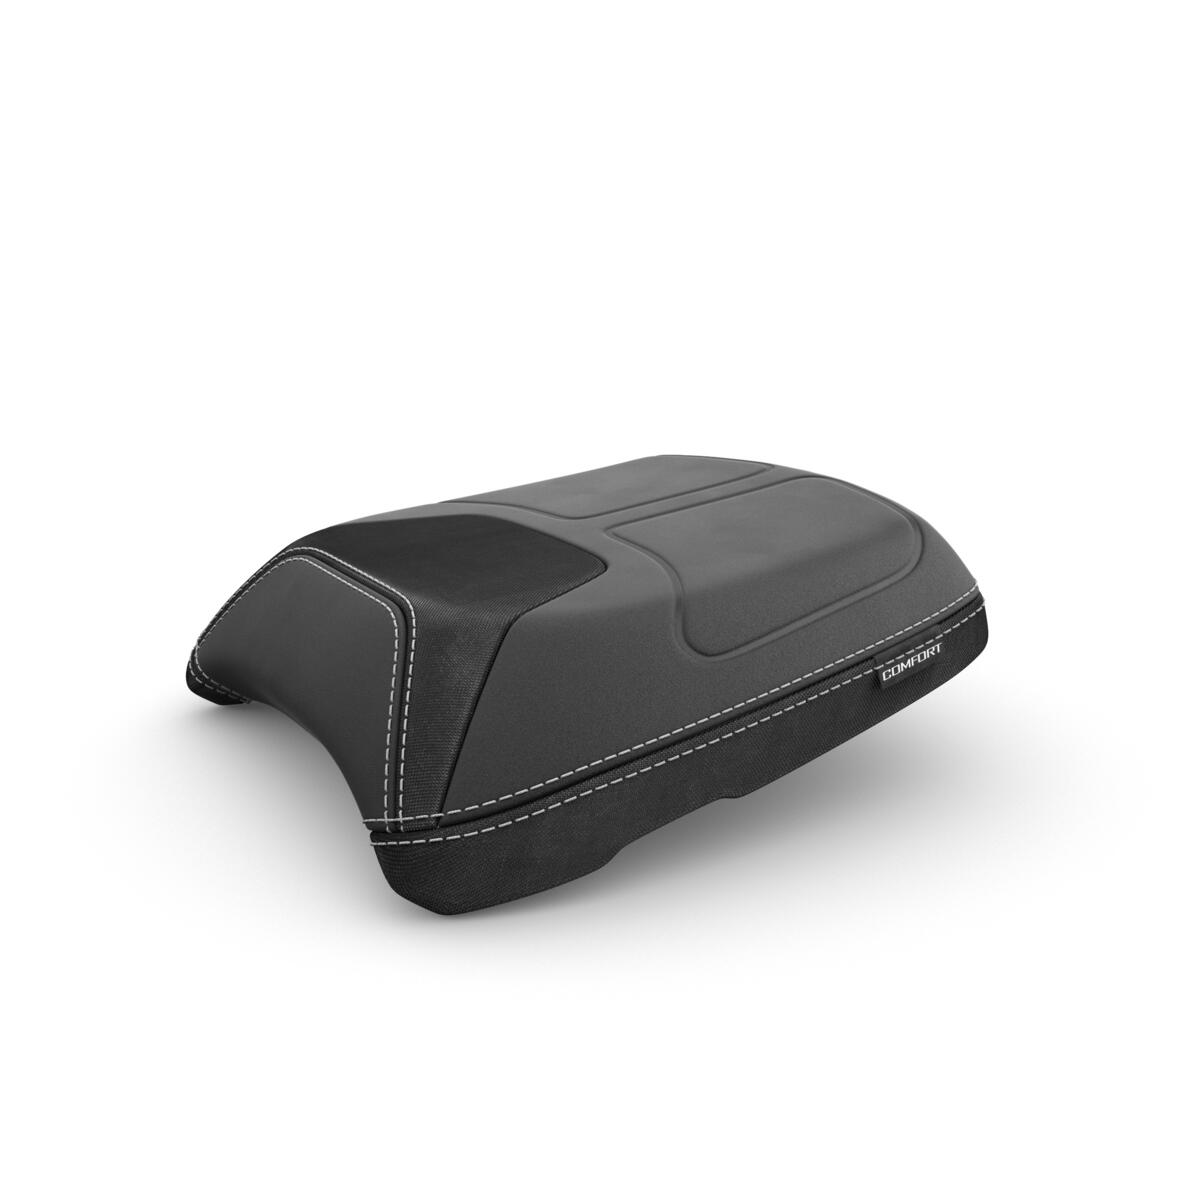 TRACER 9 har et komfortabelt passasjersete designet for økt kjørekomfort over lange distanser. Den harde skummen og myke overflatelommene sørger for at du får maksimal glede av touring når dere er to.